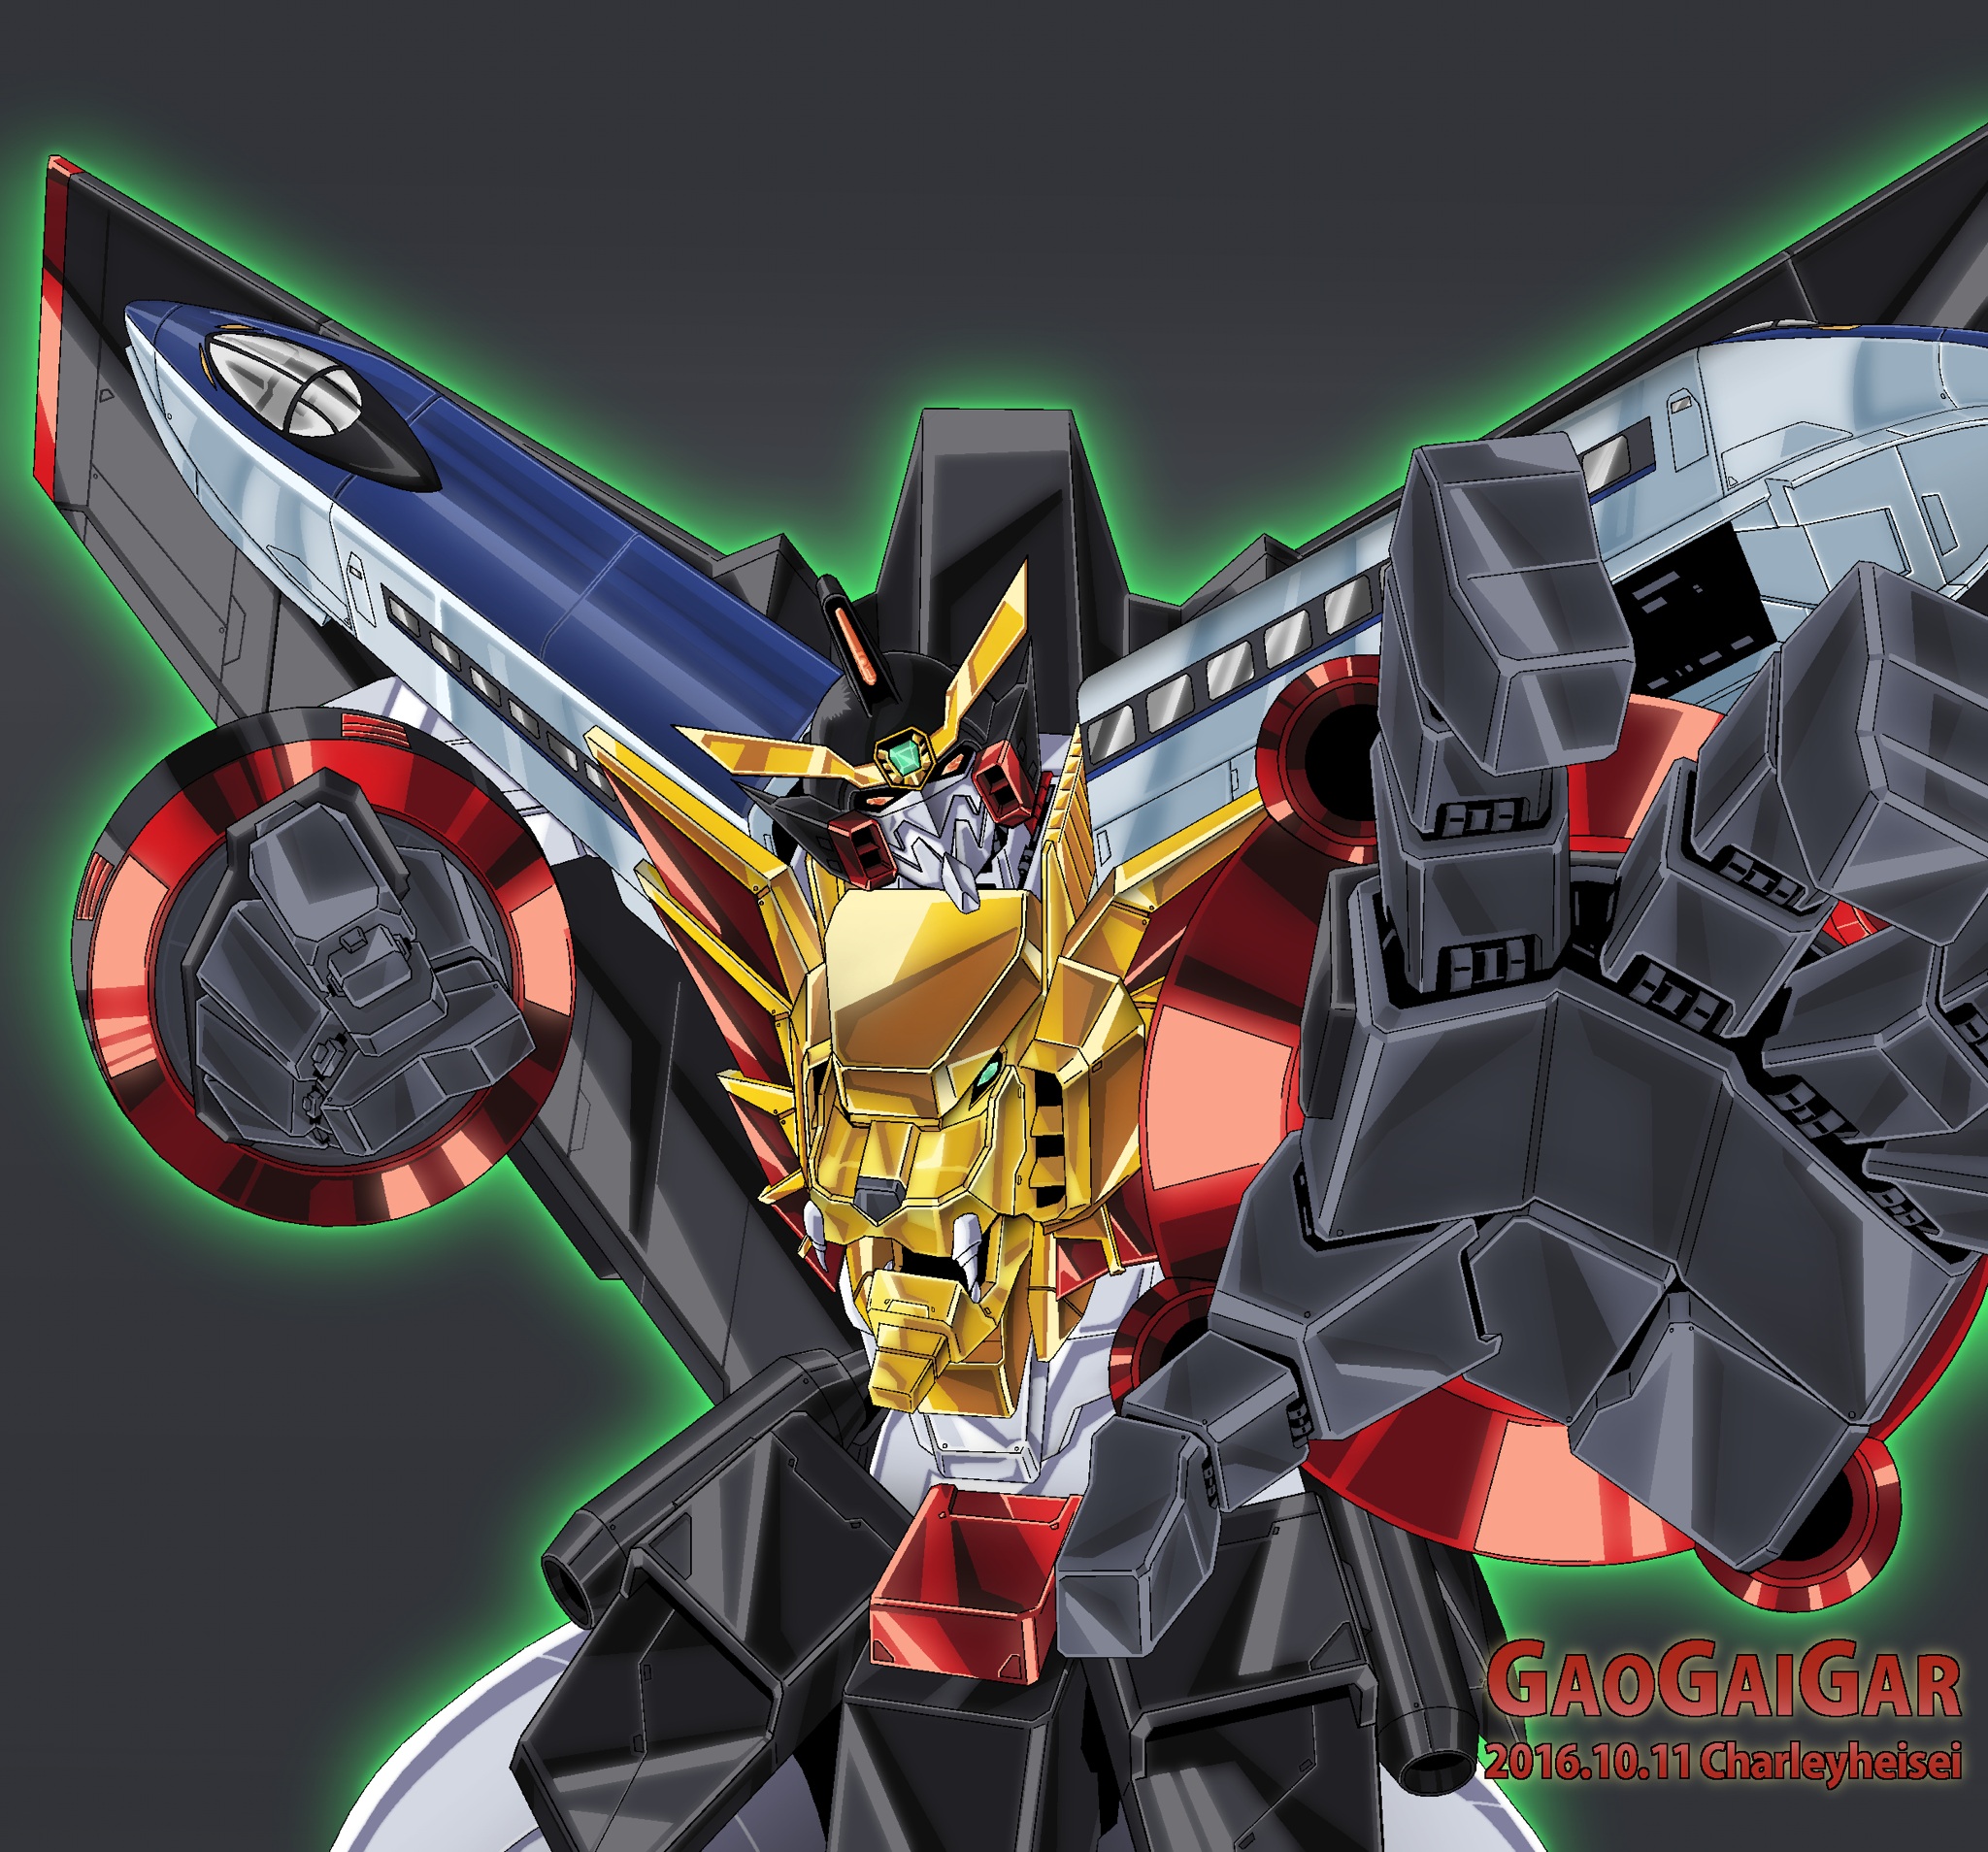 Anime 2048x1908 anime Super Robot Taisen The King of Braves Gaogaigar Gaogaigar artwork fan art digital art mechs